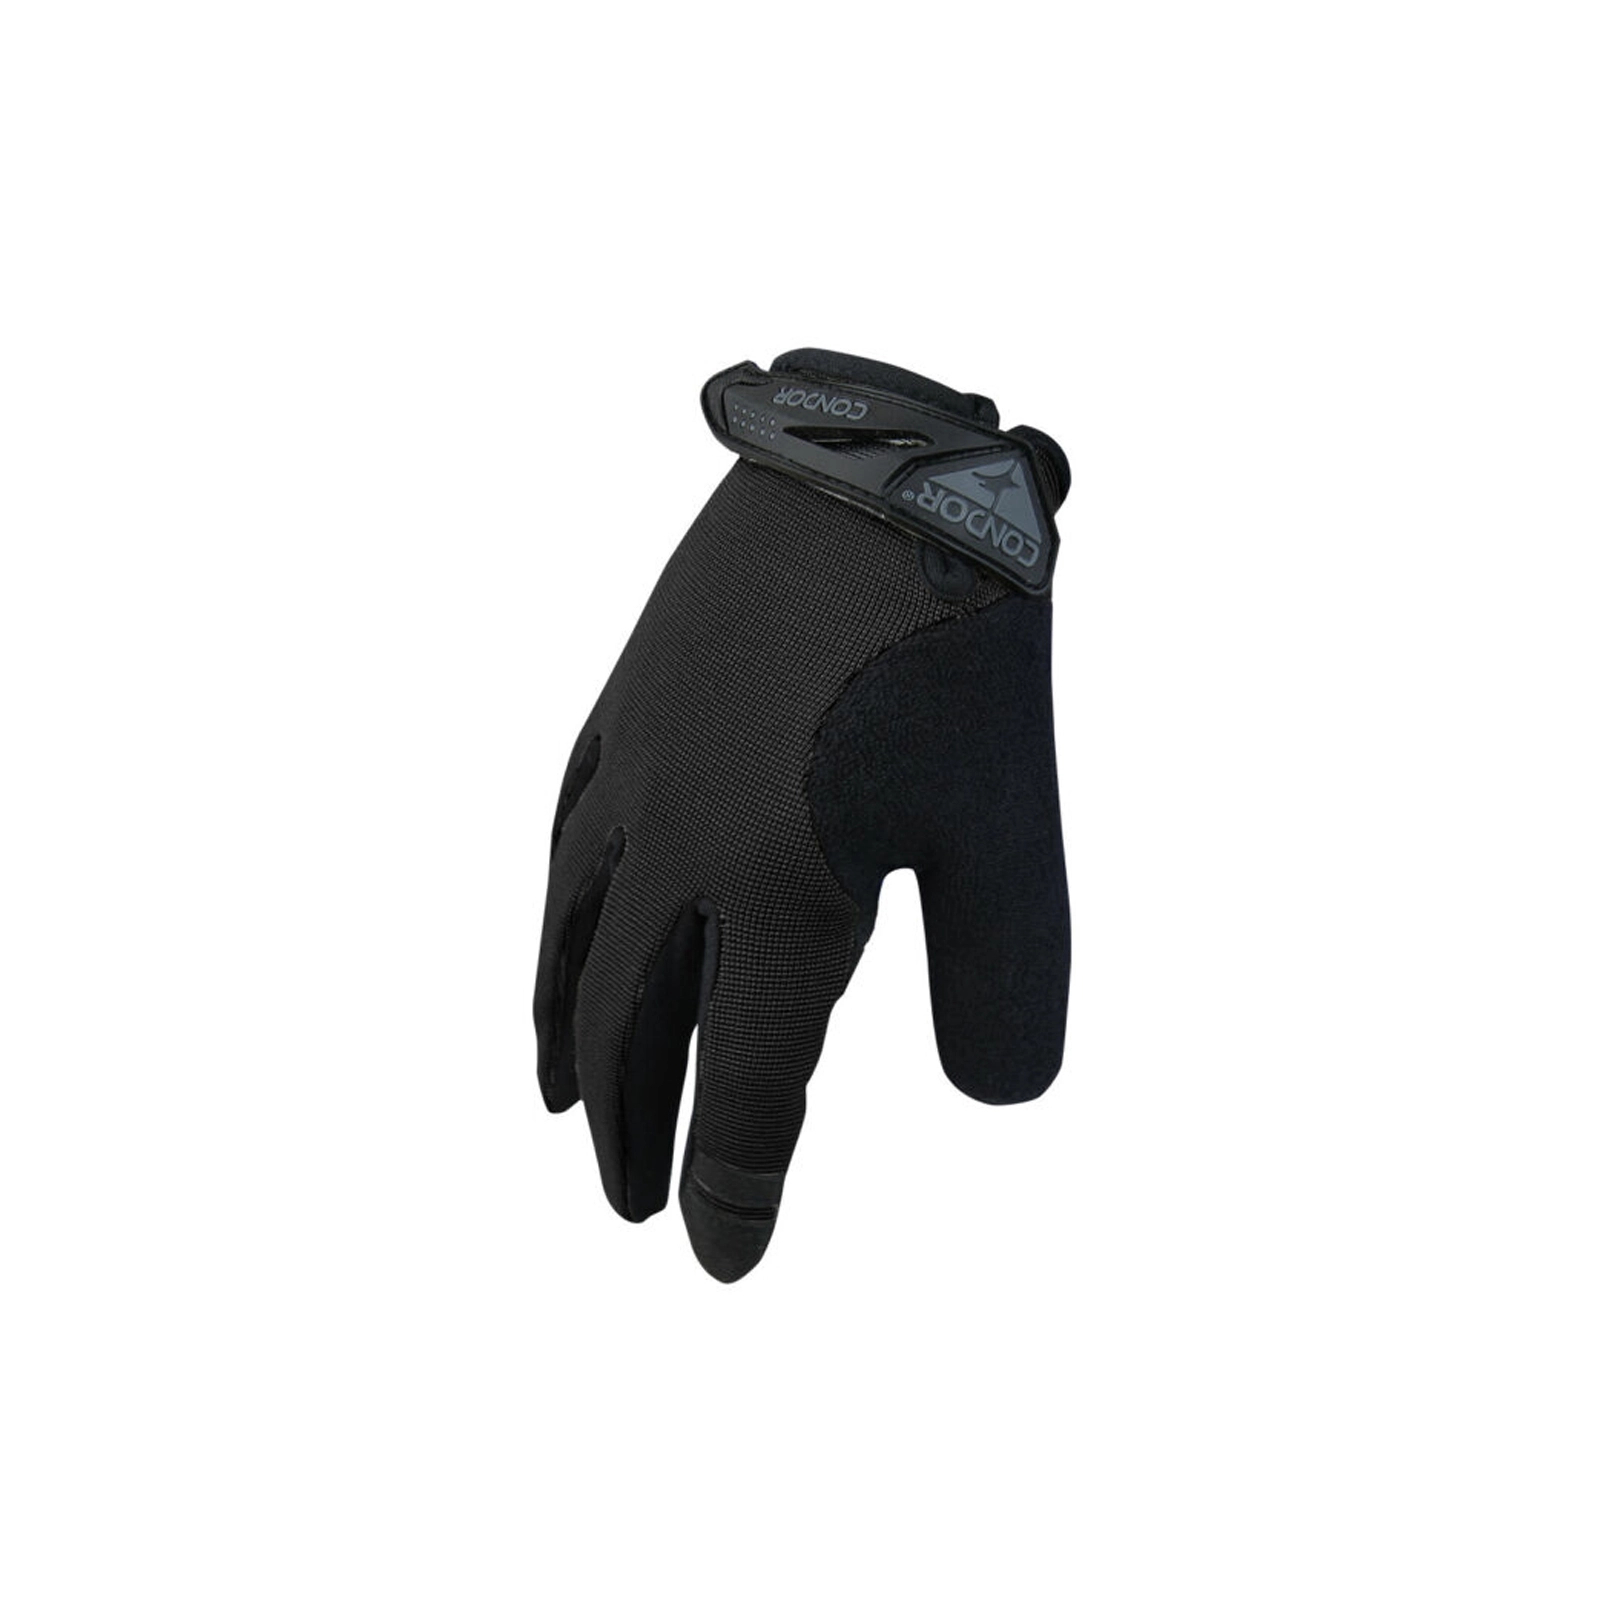 Тактические перчатки Condor-Clothing Shooter Glove 10 Black (228-002-10)